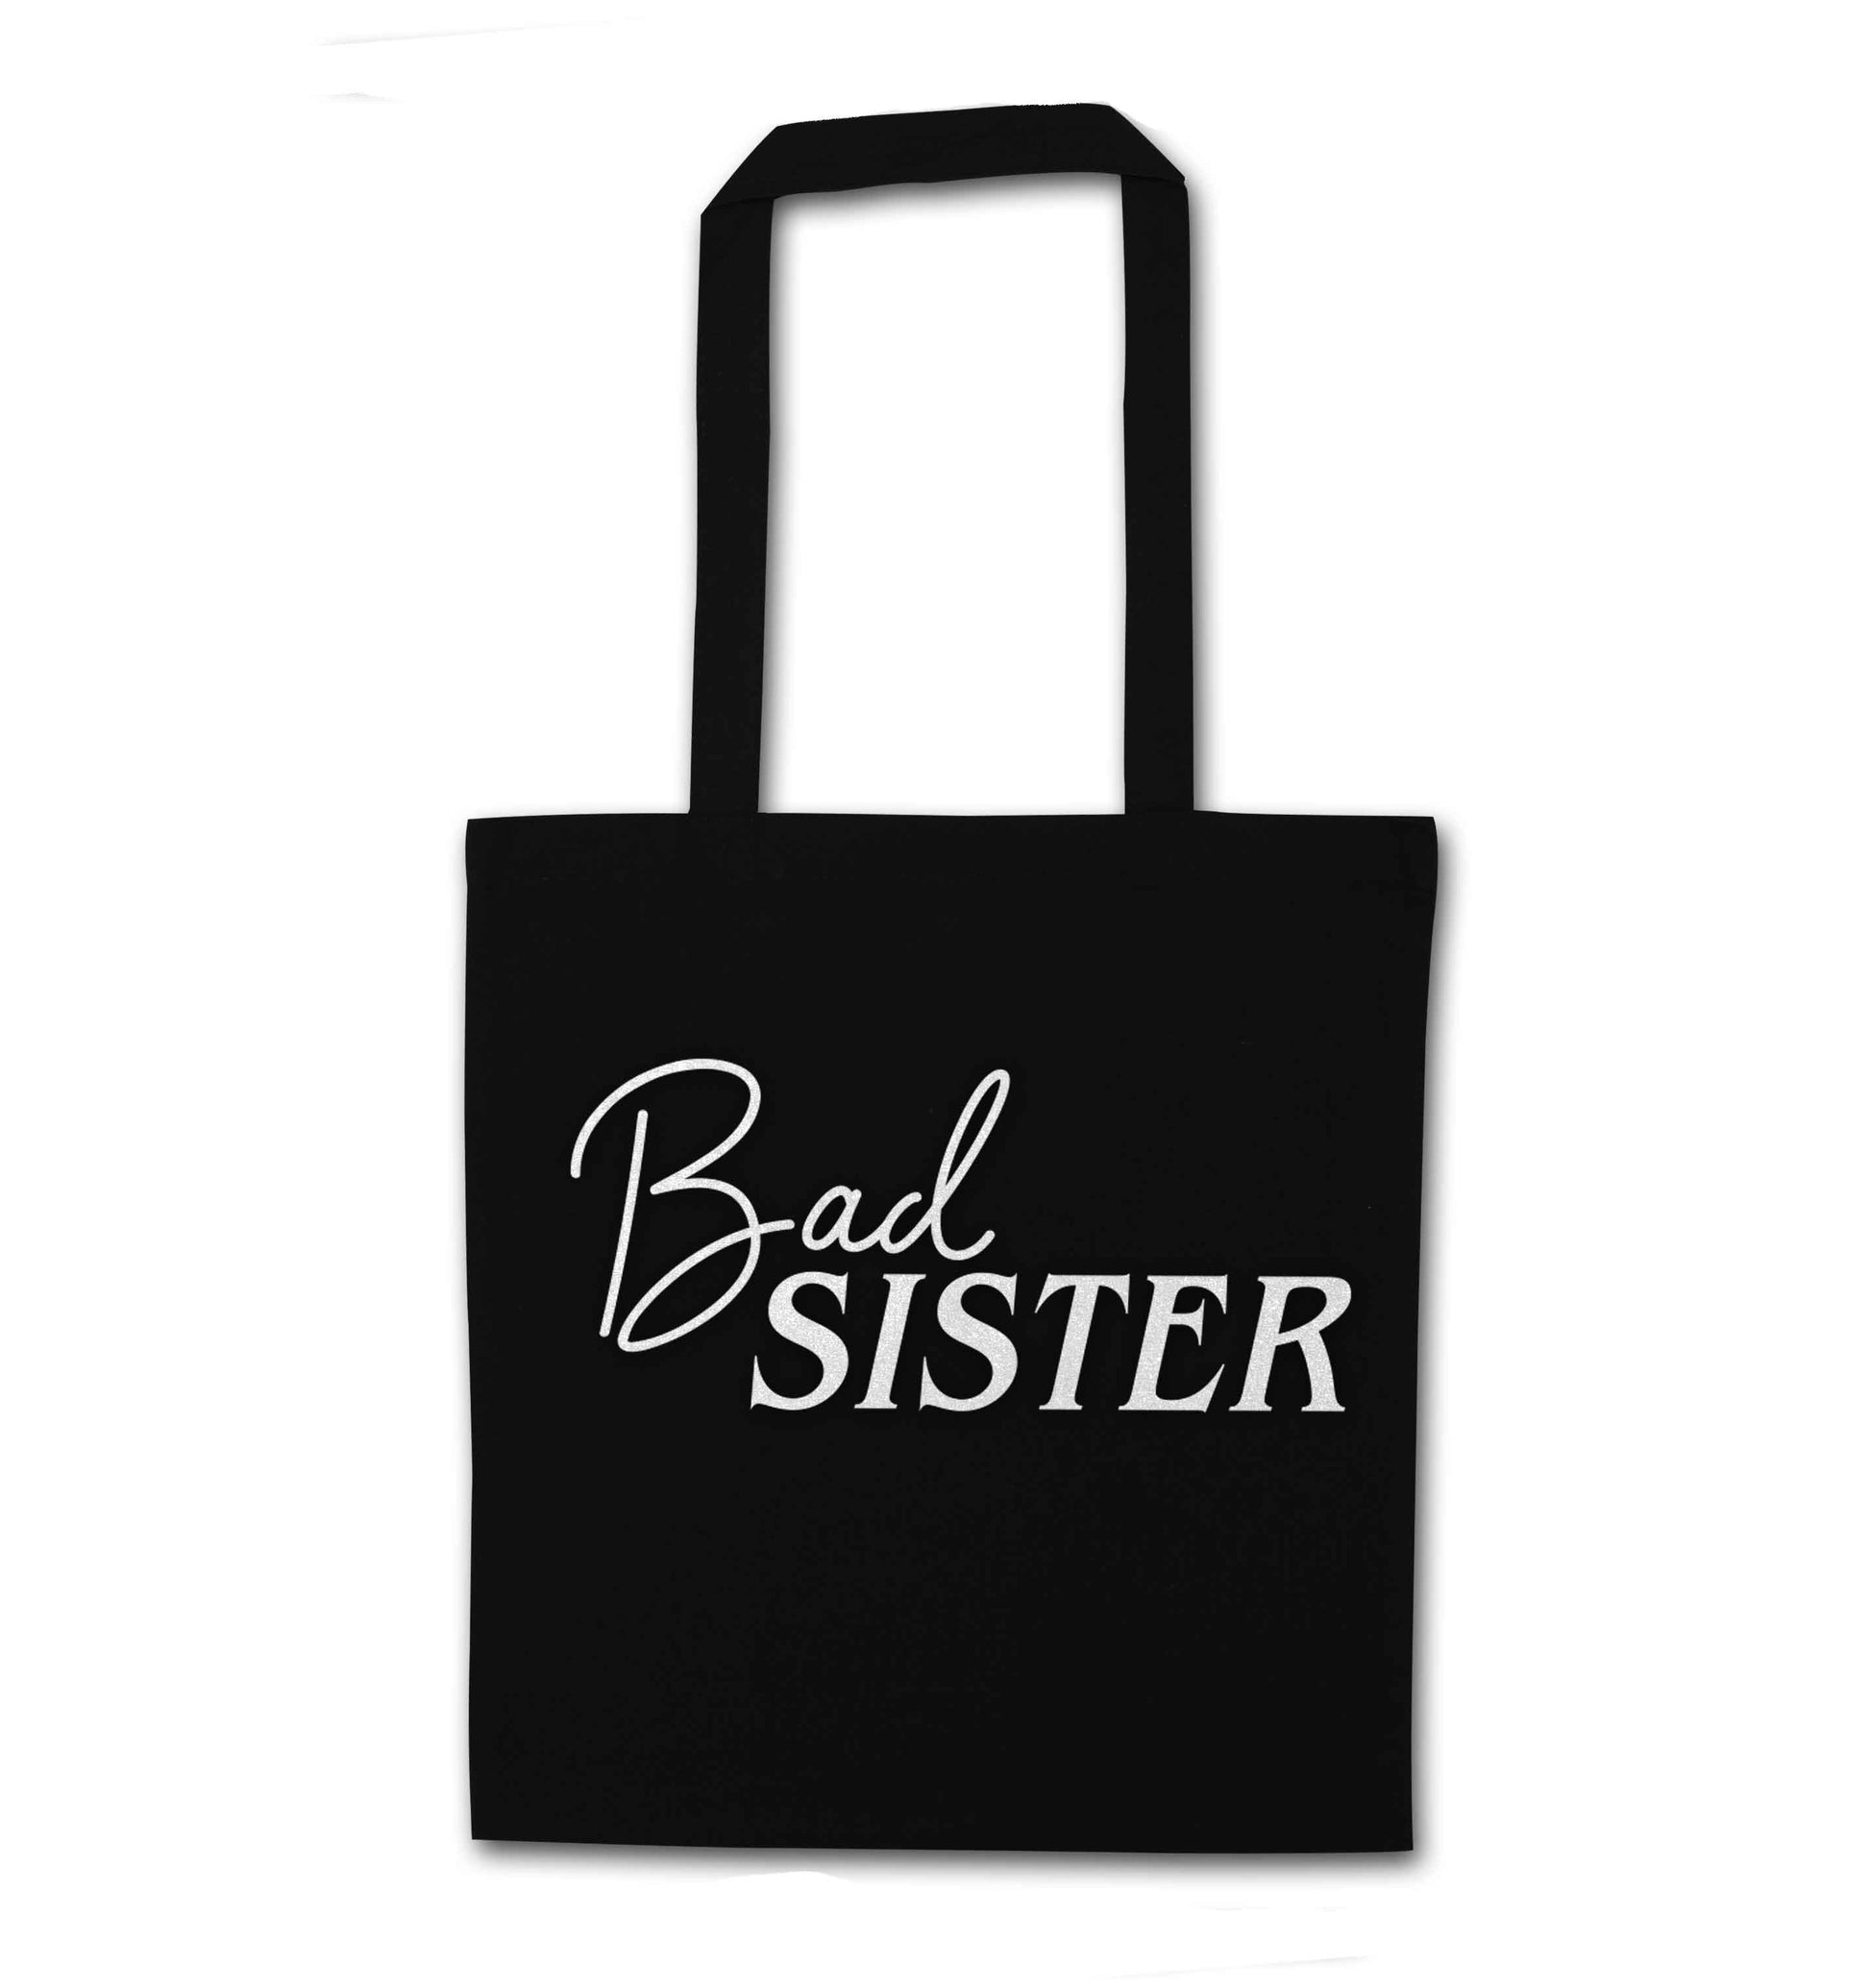 Bad sister black tote bag